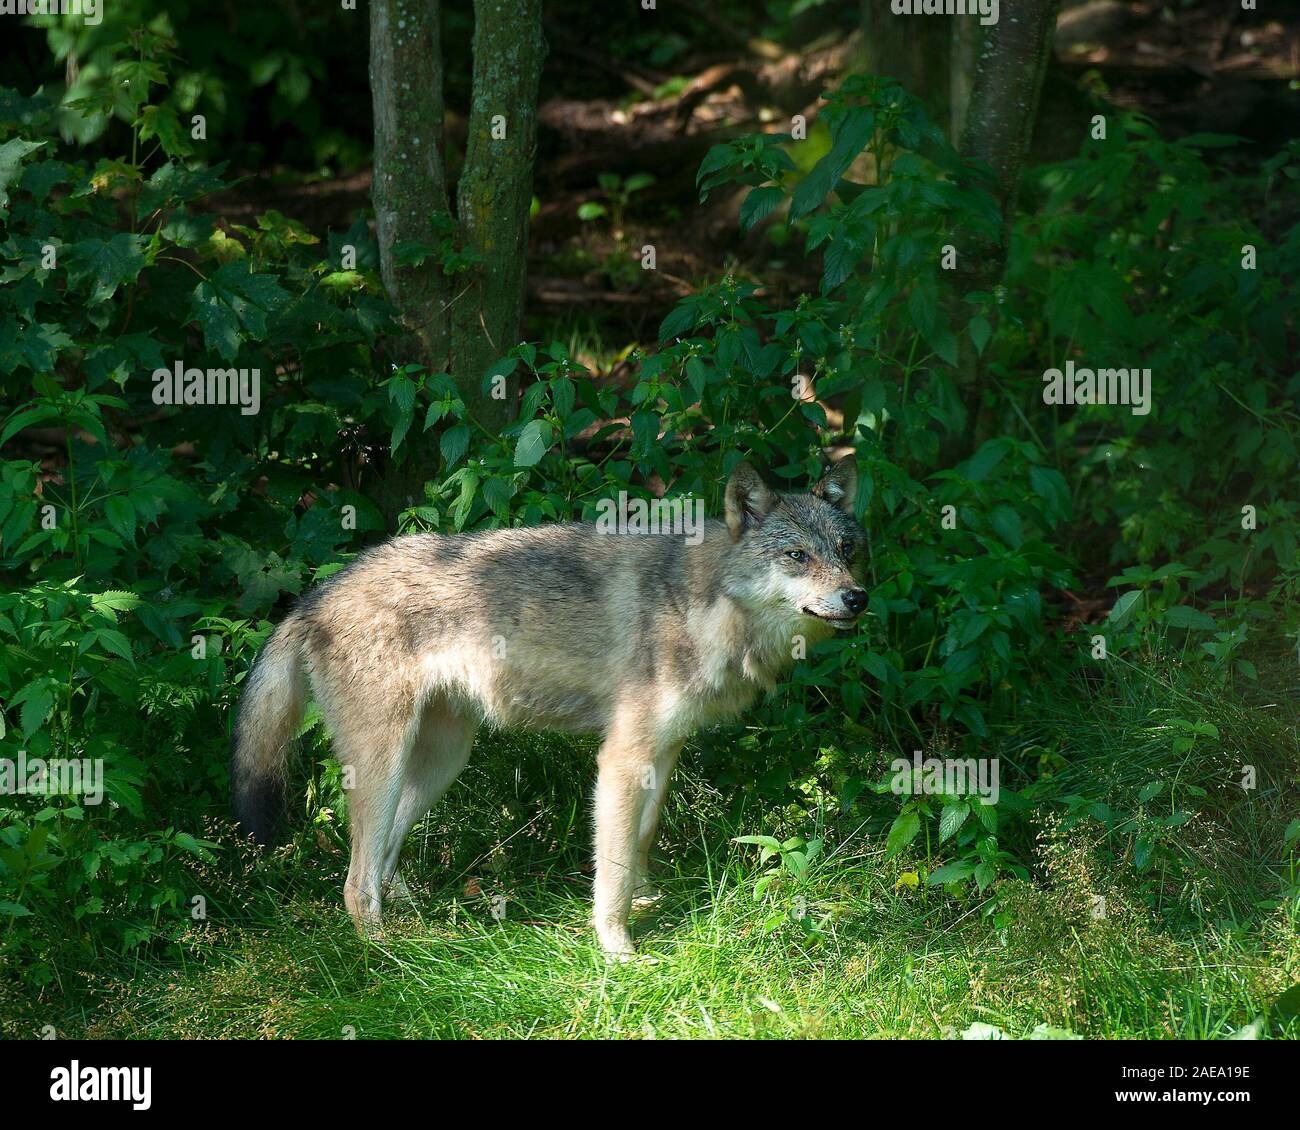 Wolf Tier close-up Profil anzeigen im Wald mit einem Wald und Laub Hintergrund in seiner Umgebung und Umwelt. Stockfoto